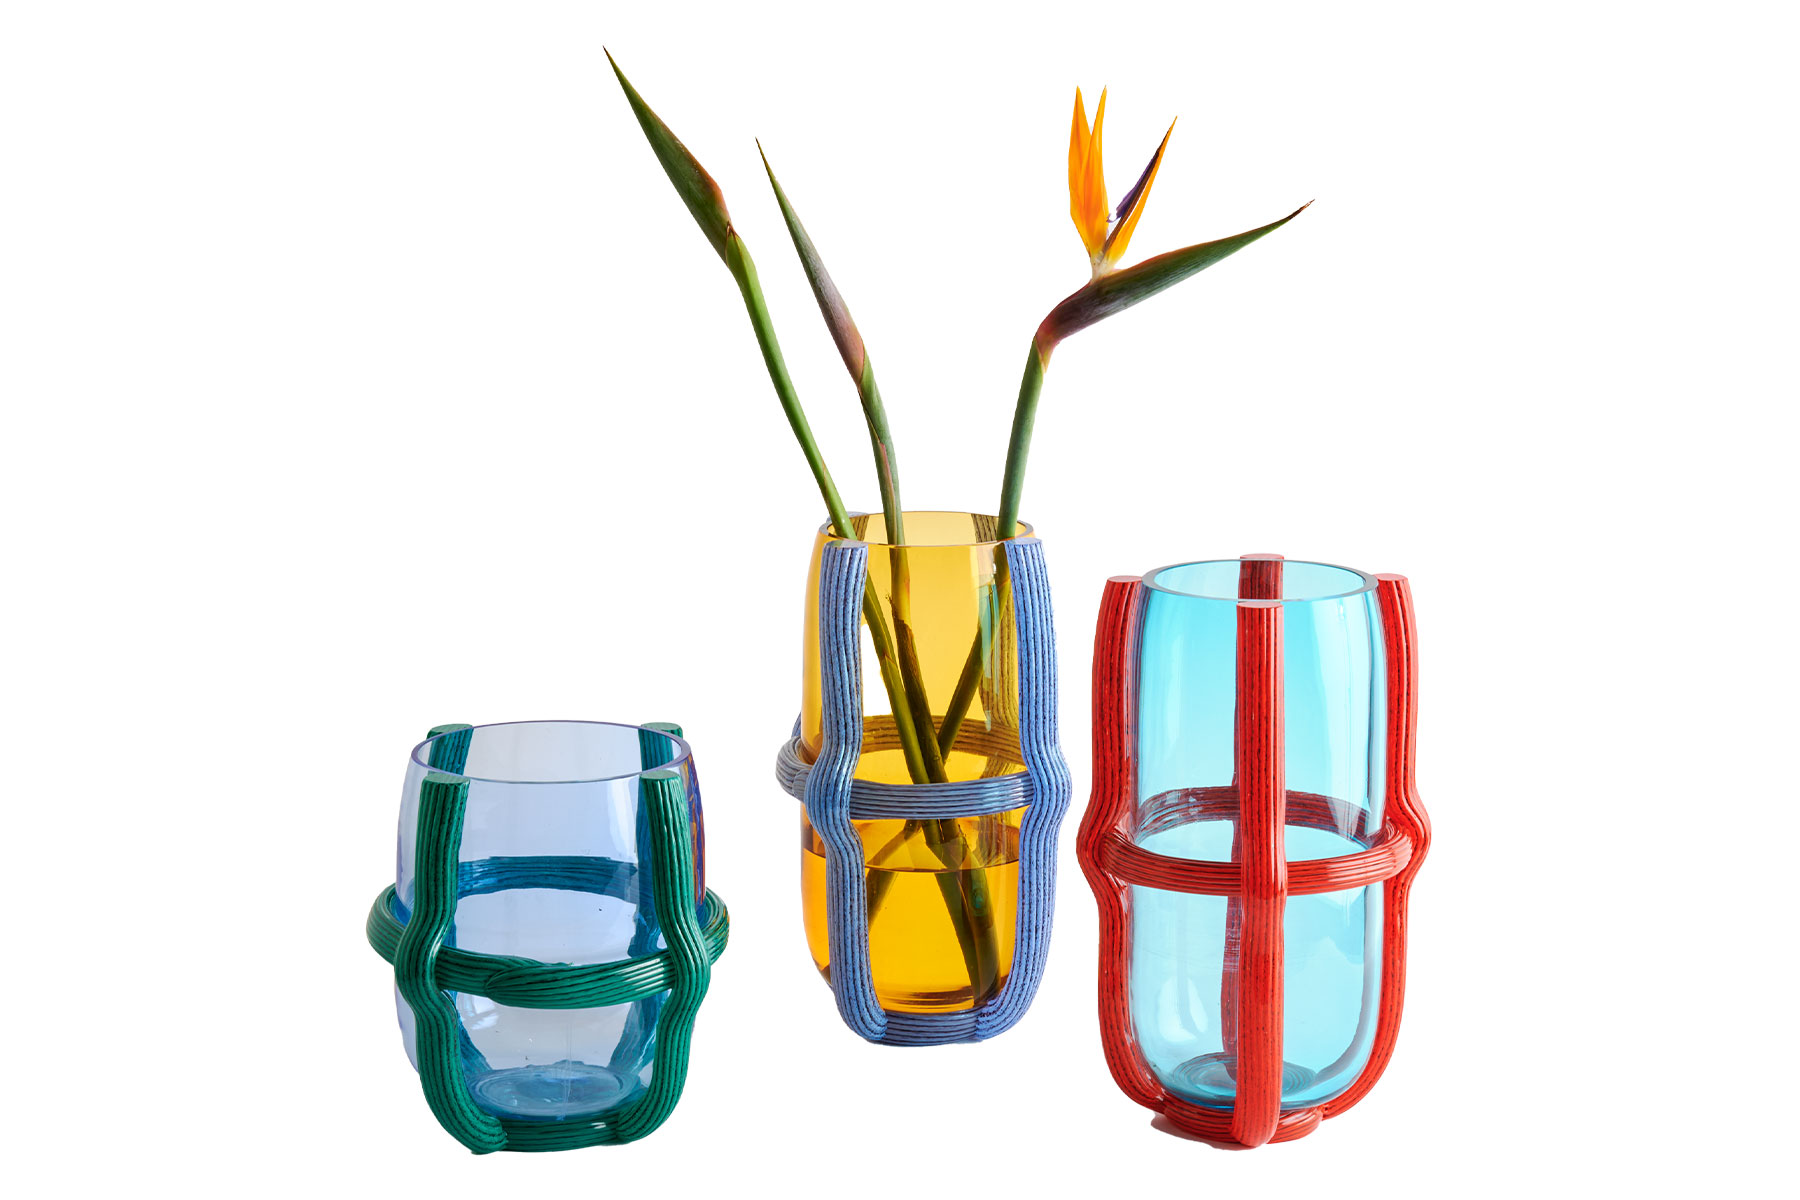 Cassina Sestiere Murano Glass Vases from Scott + Cooner